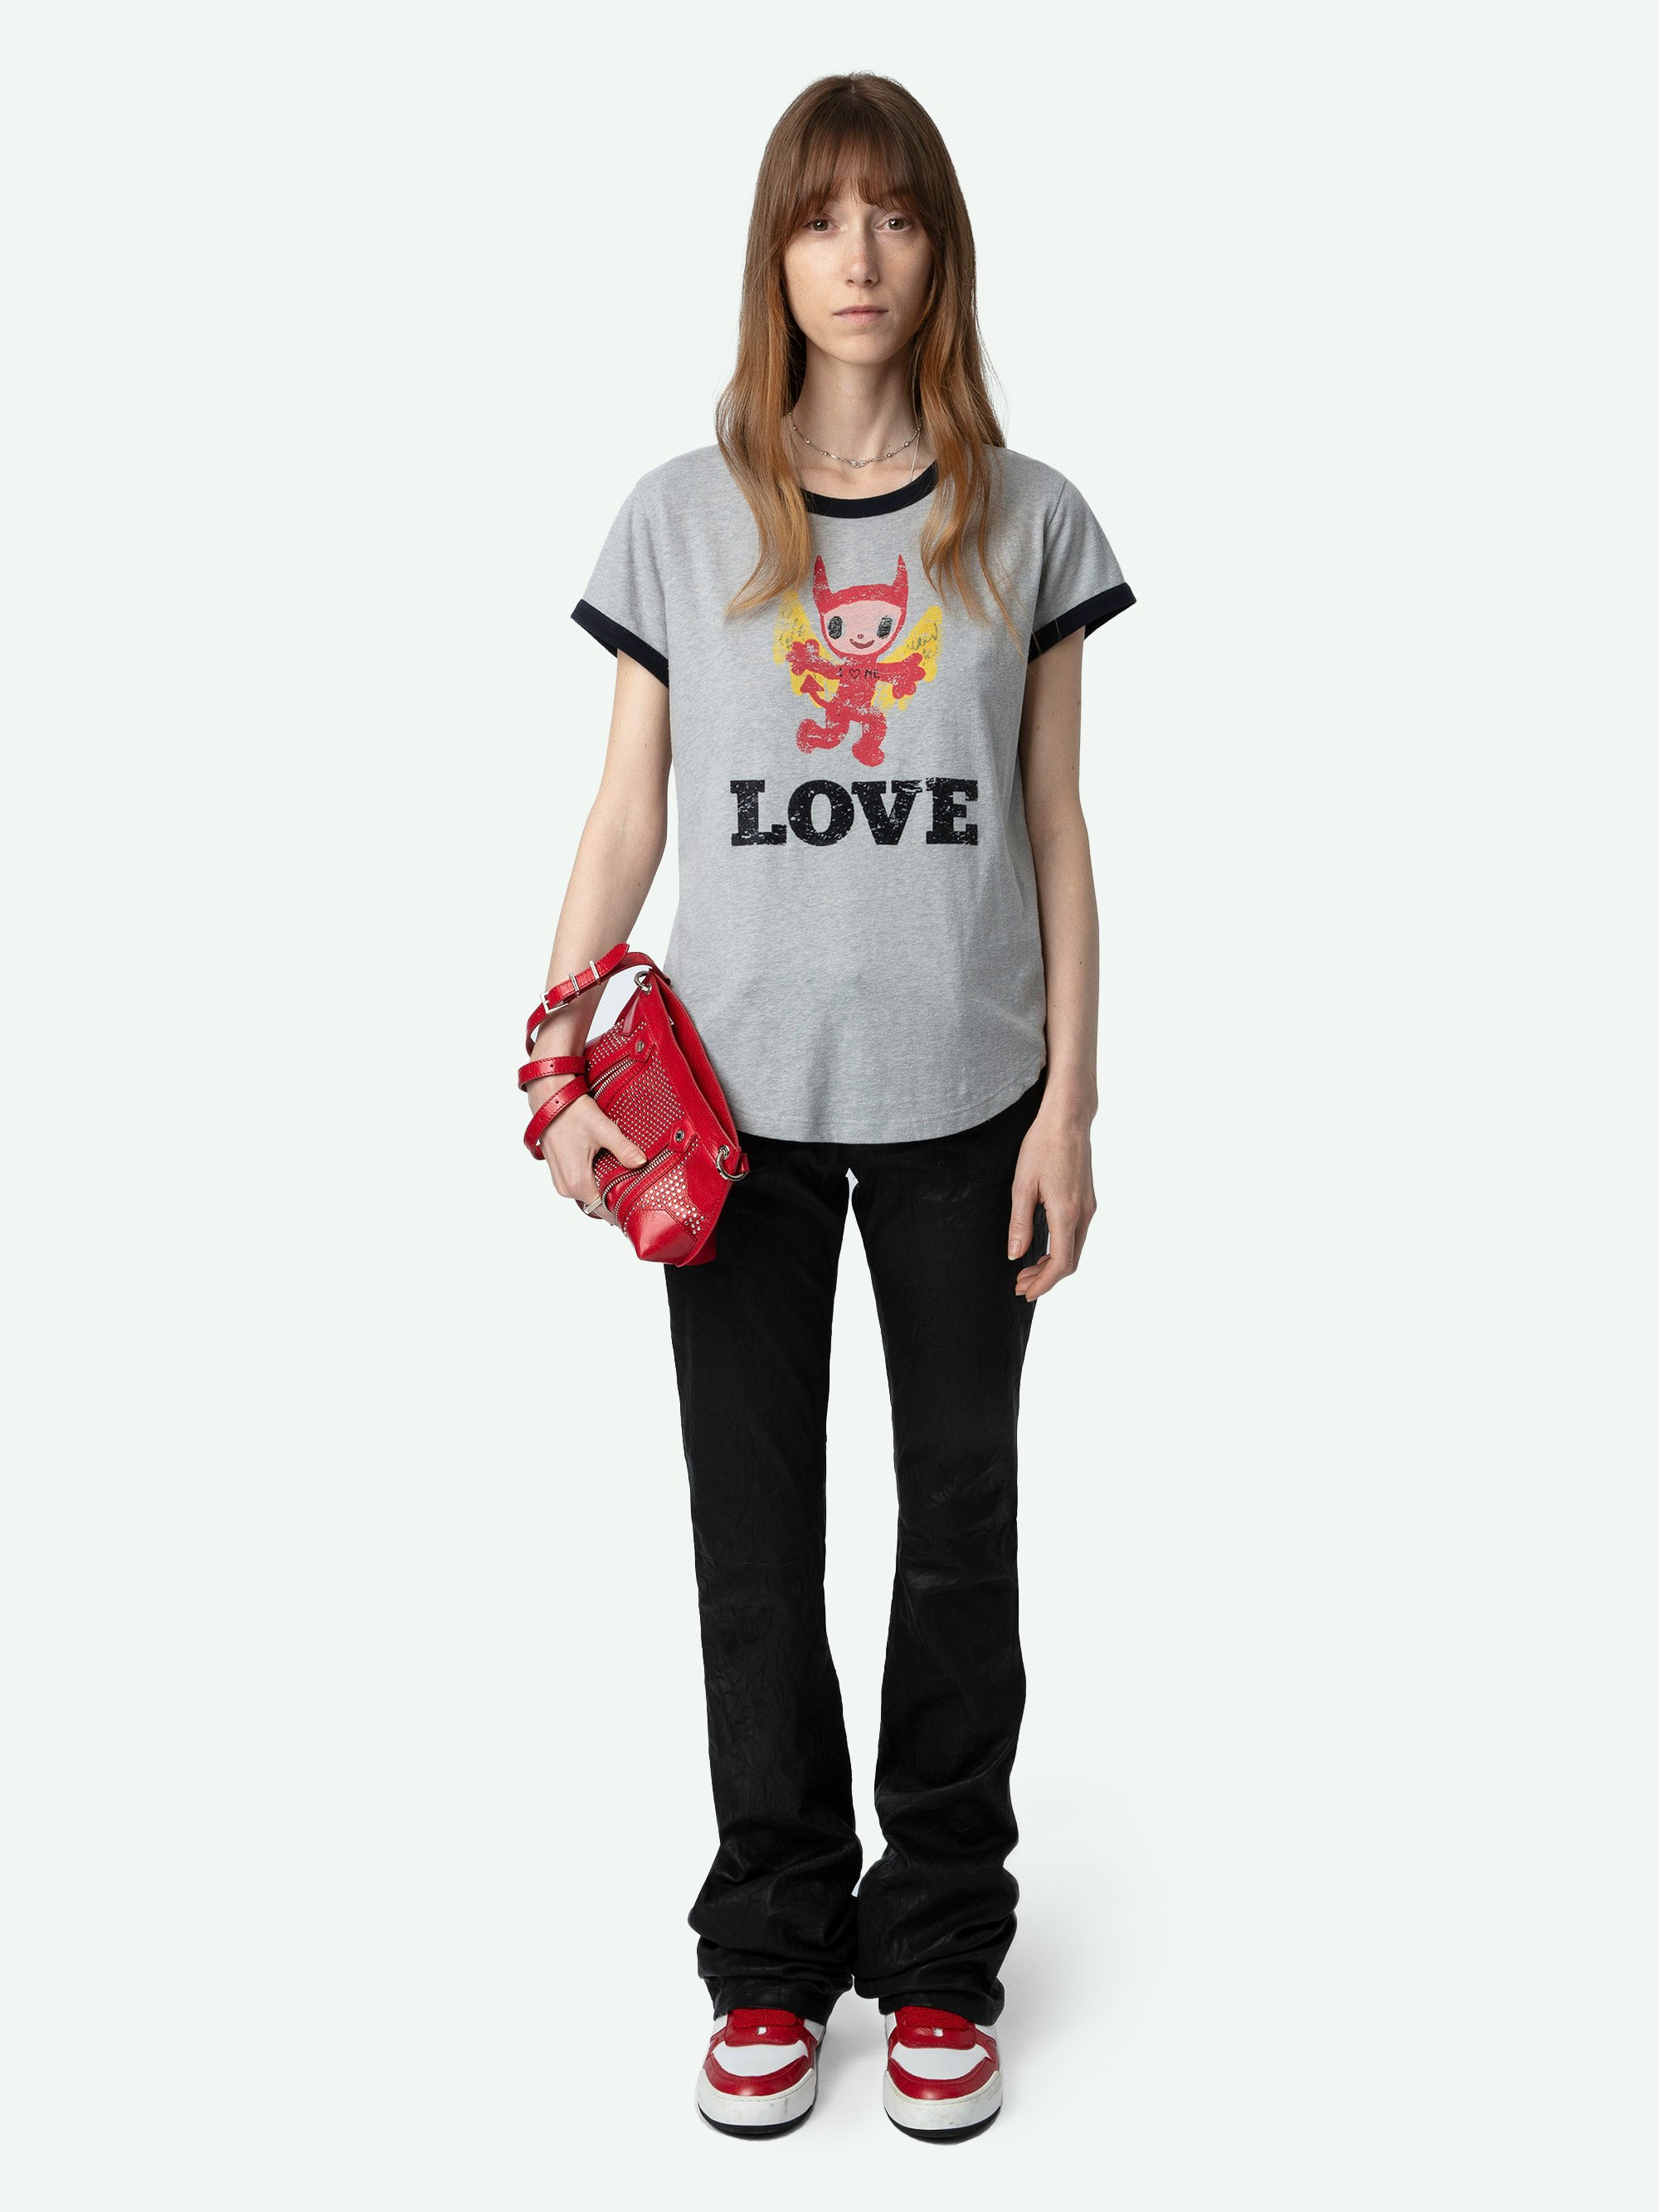 T-shirt Woop Devil - T-shirt grigio screziato a maniche corte, bordi a contrasto e stampa Devil Love sul davanti.